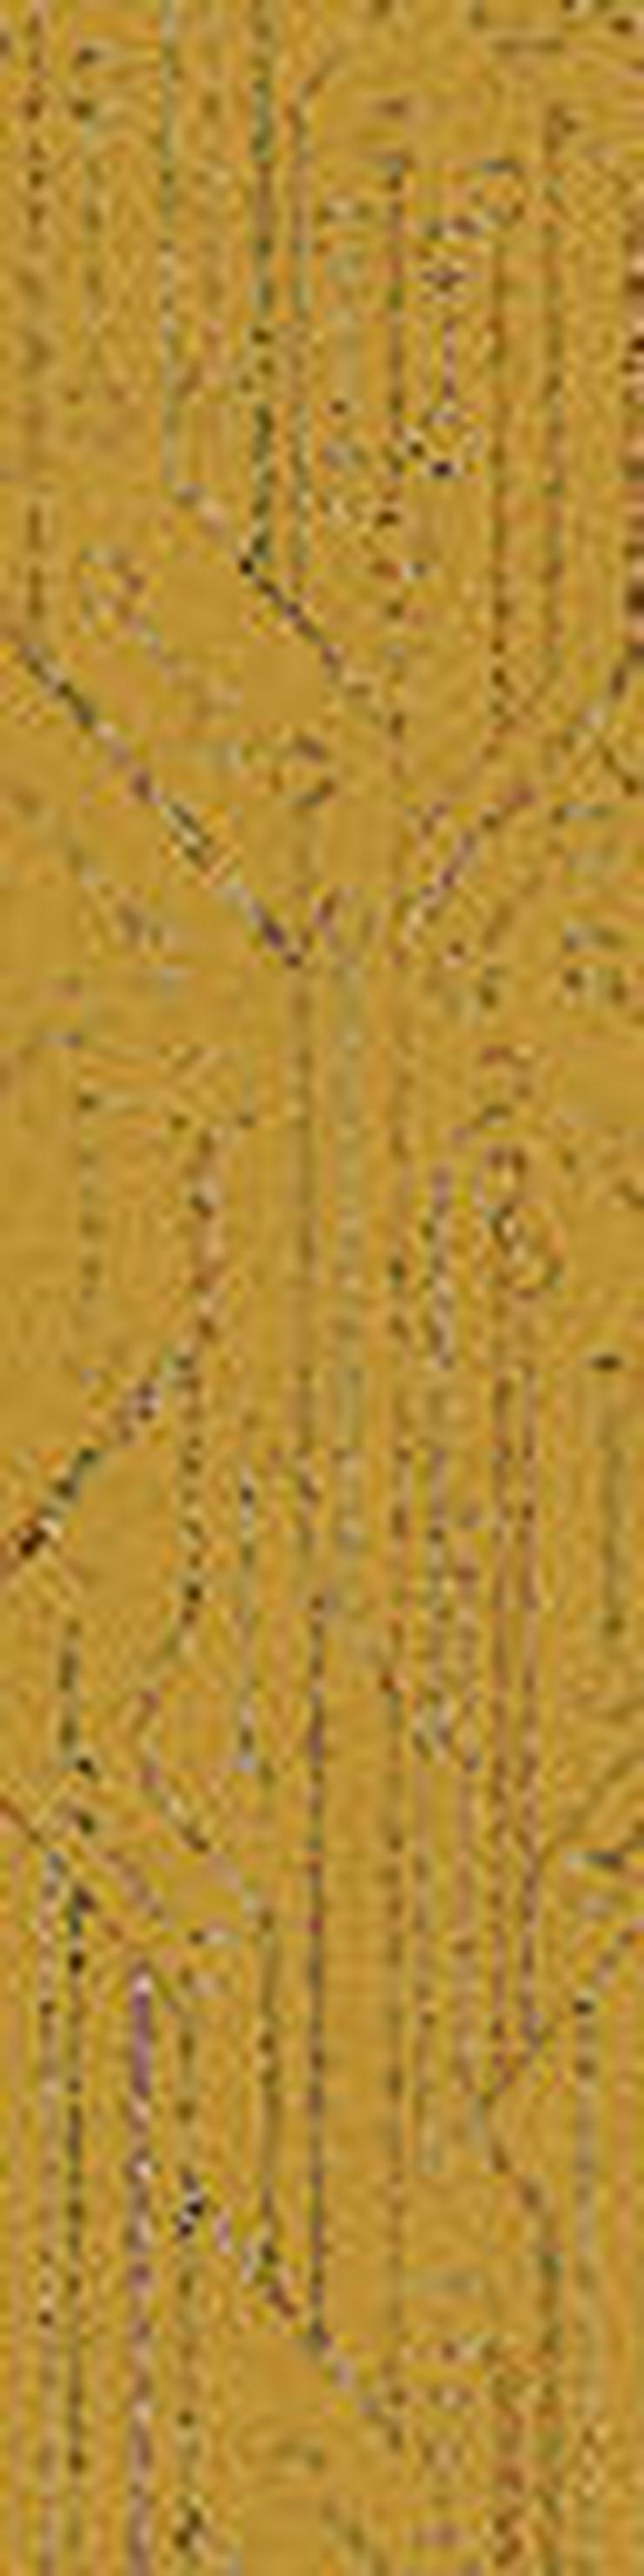 Jetzt im Angebot: Schöne gelbe 25X100cm Interface Teppichfliesen - Teppiche - Bild 2